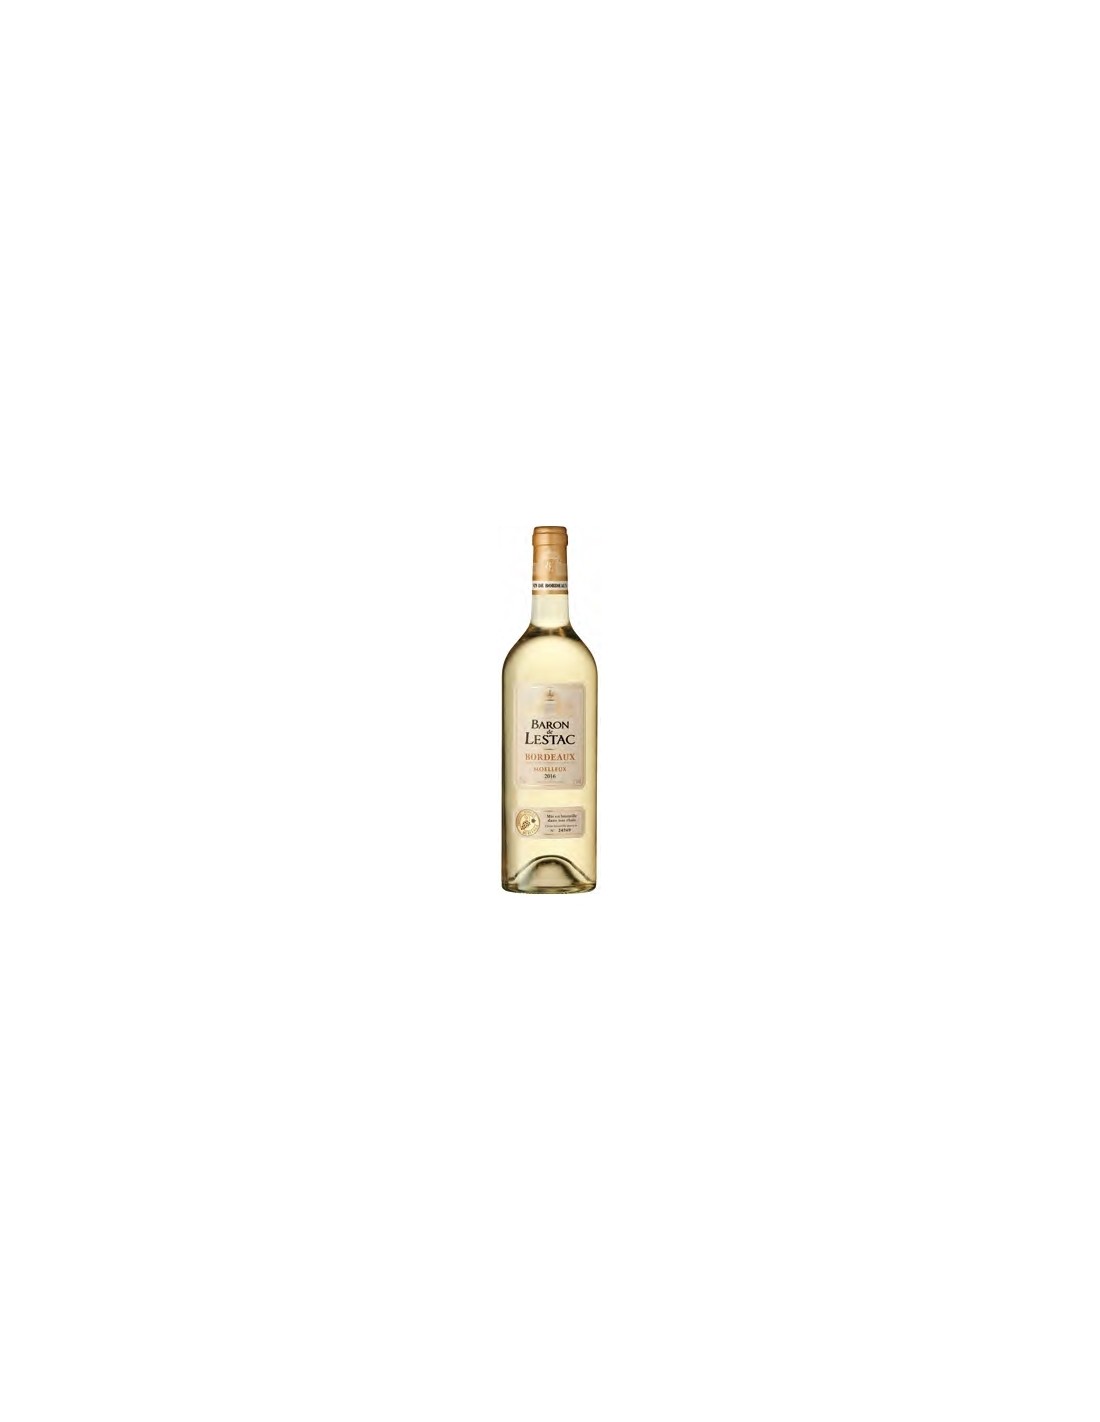 Vin alb demidulce, Moelleux, Baron de Lestac Bordeaux, 0.75L, 12.5% alc., Franta alcooldiscount.ro